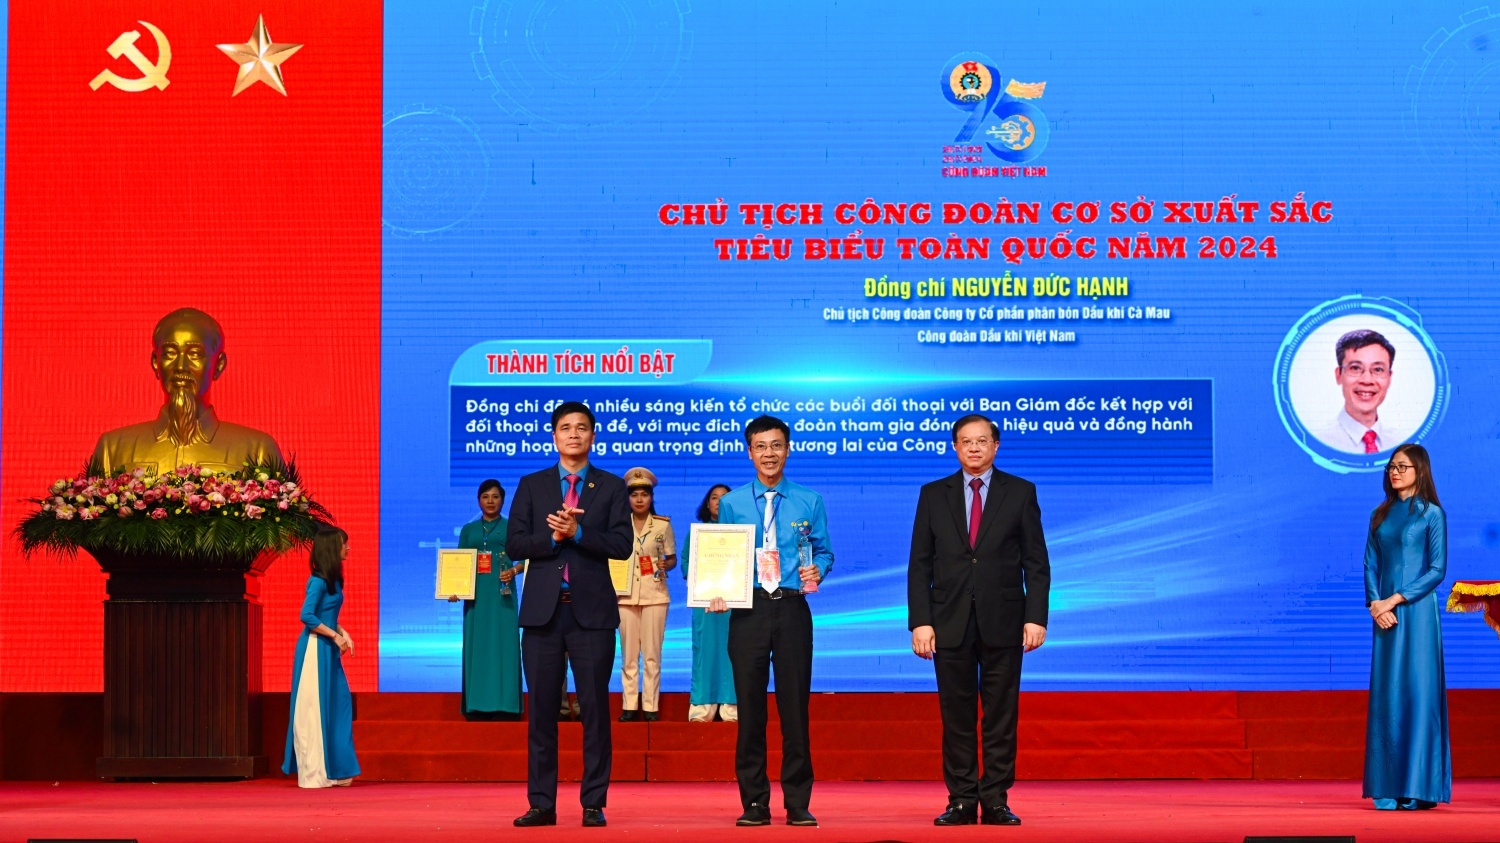 Chủ tịch Công đoàn PVCFC Nguyễn Đức Hạnh được tuyên dương Chủ tịch CĐCS xuất sắc, tiêu biểu toàn quốc